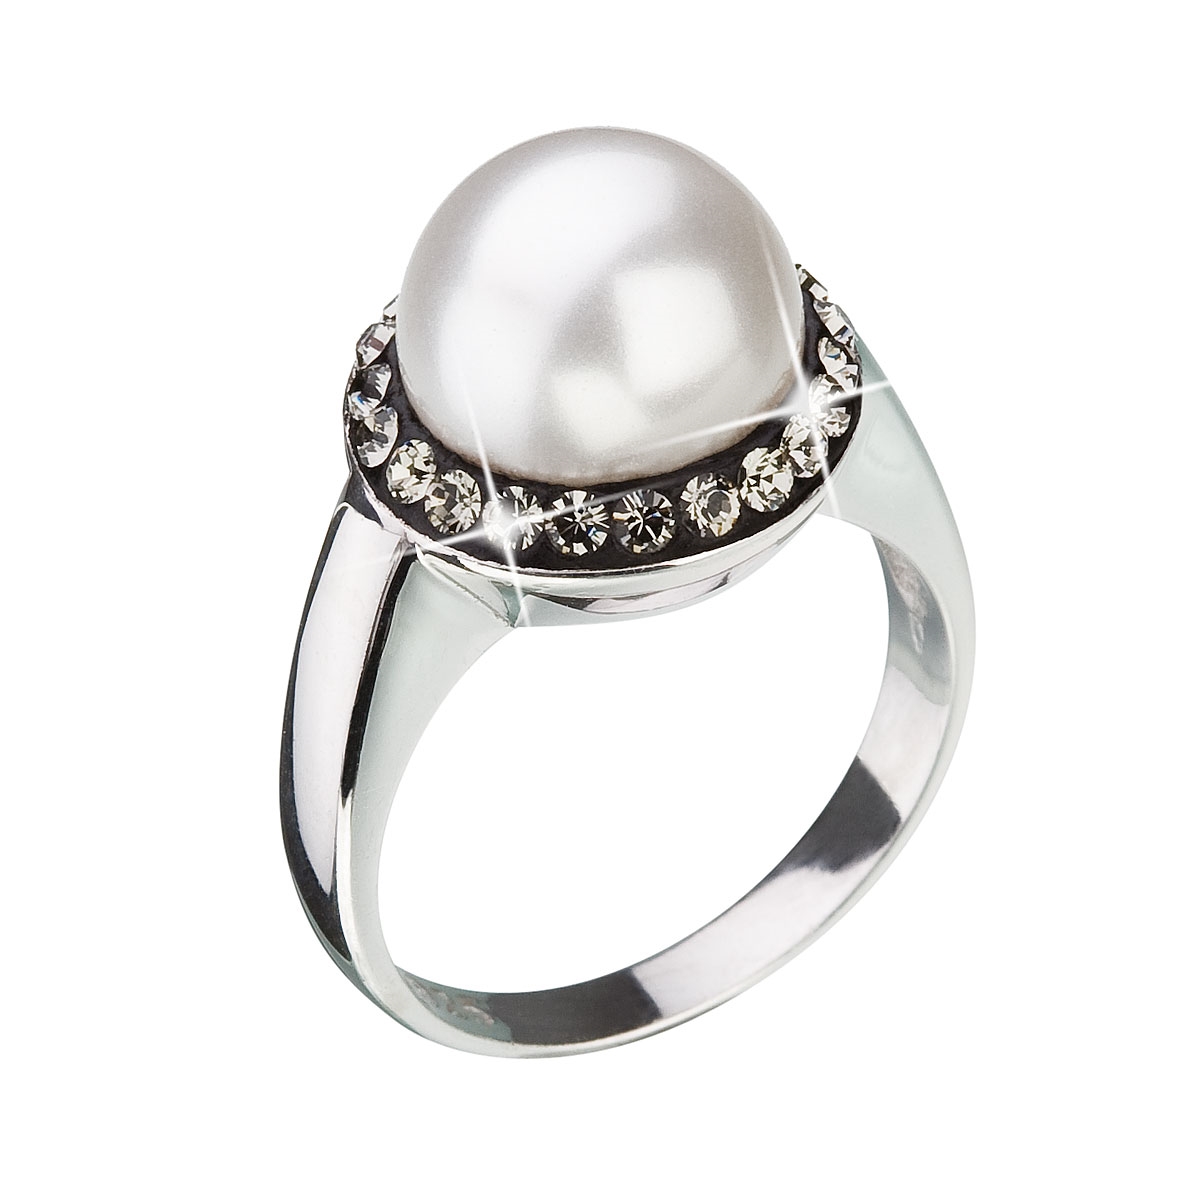 Strieborný prsteň s kryštálmi Swarovski a perlou